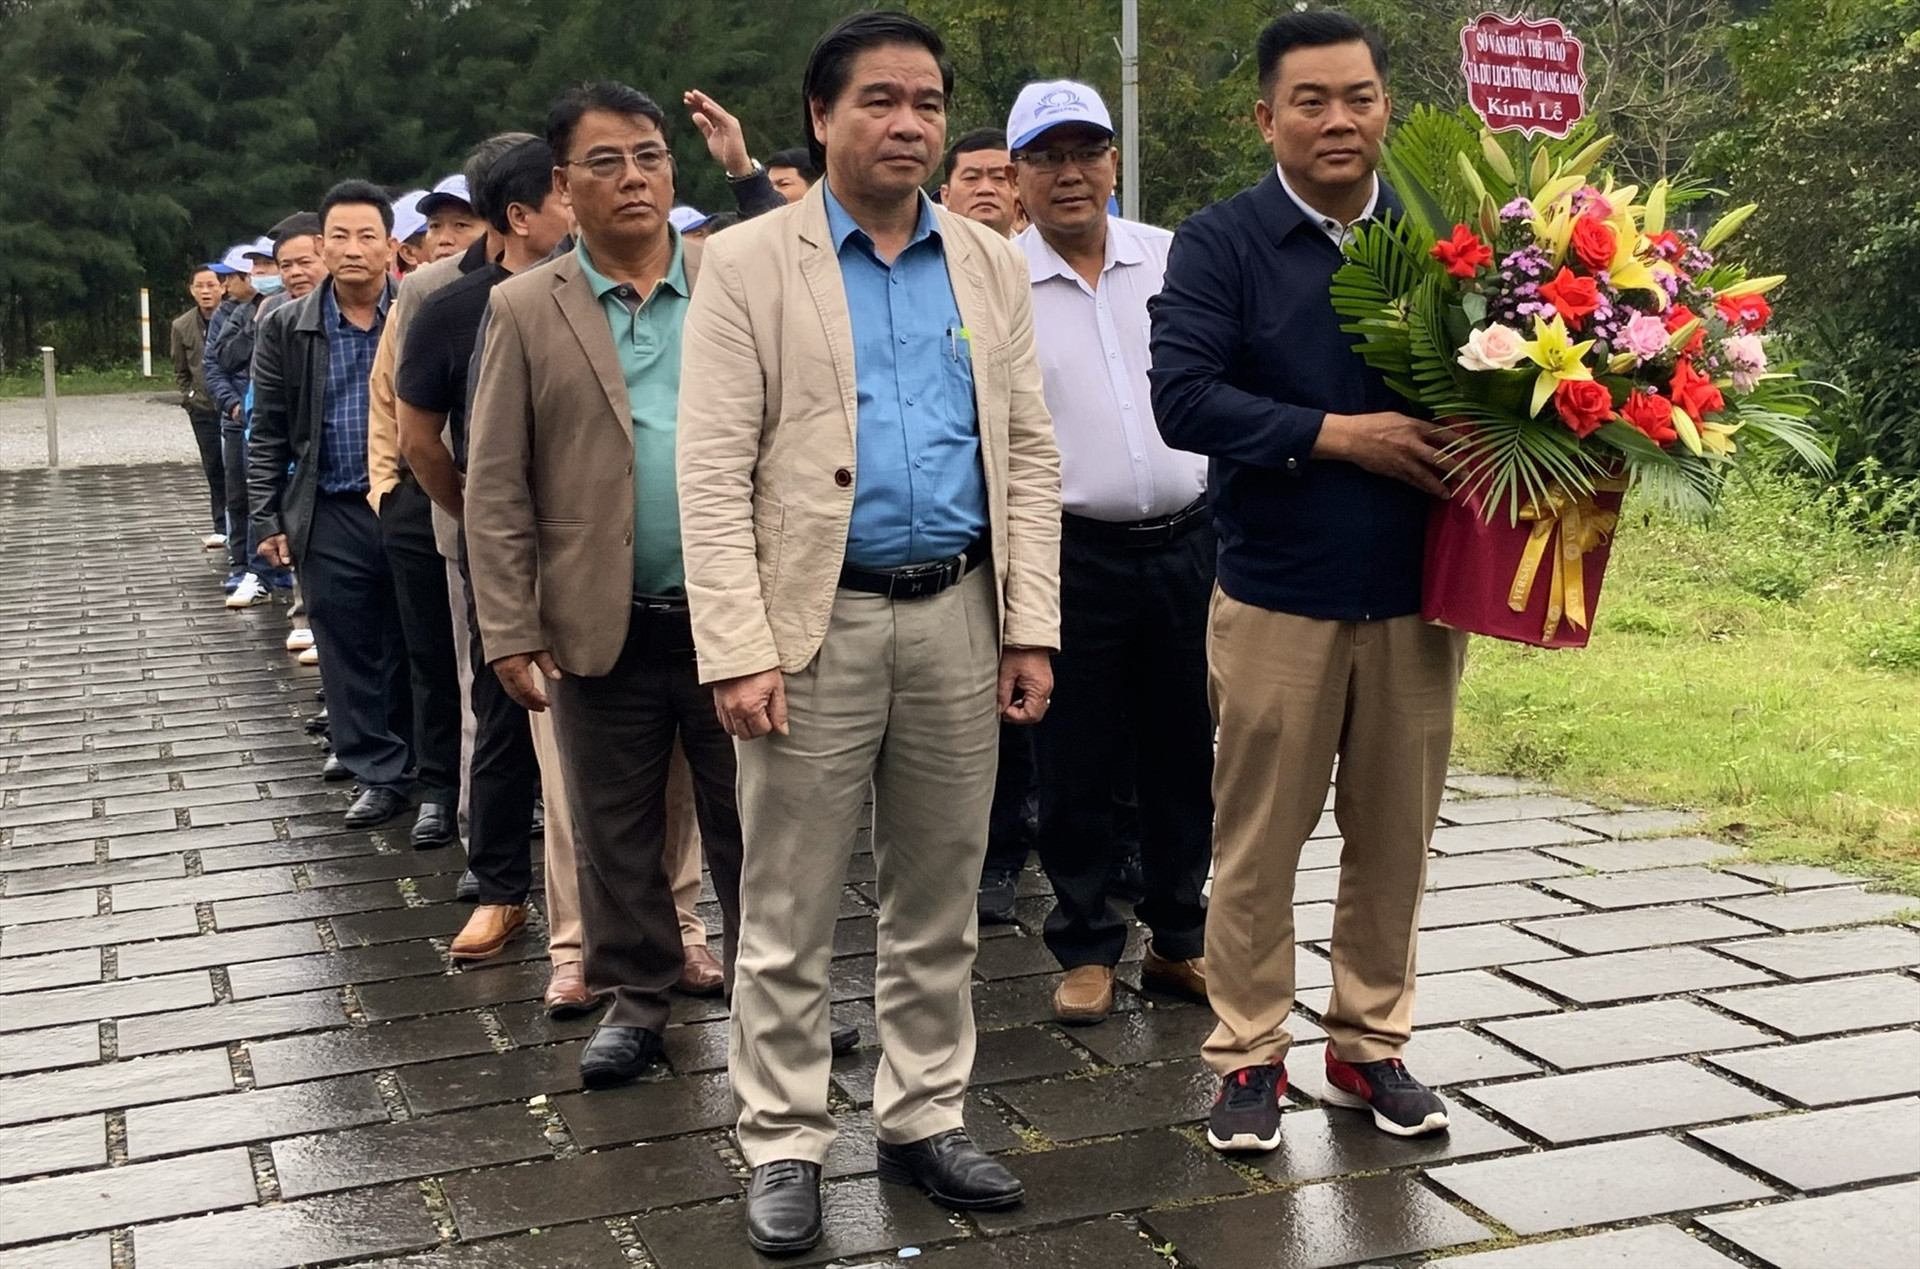 Ông Tào Viết Hải, Phó Giám đốc Sở VH-TT&DL tỉnh (Người giữ lẵng hoa) dẫn đầu đoàn công tác tỉnh Quảng Nam viếng mộ Đại tướng trong chuyến công tác cuối năm 2022.